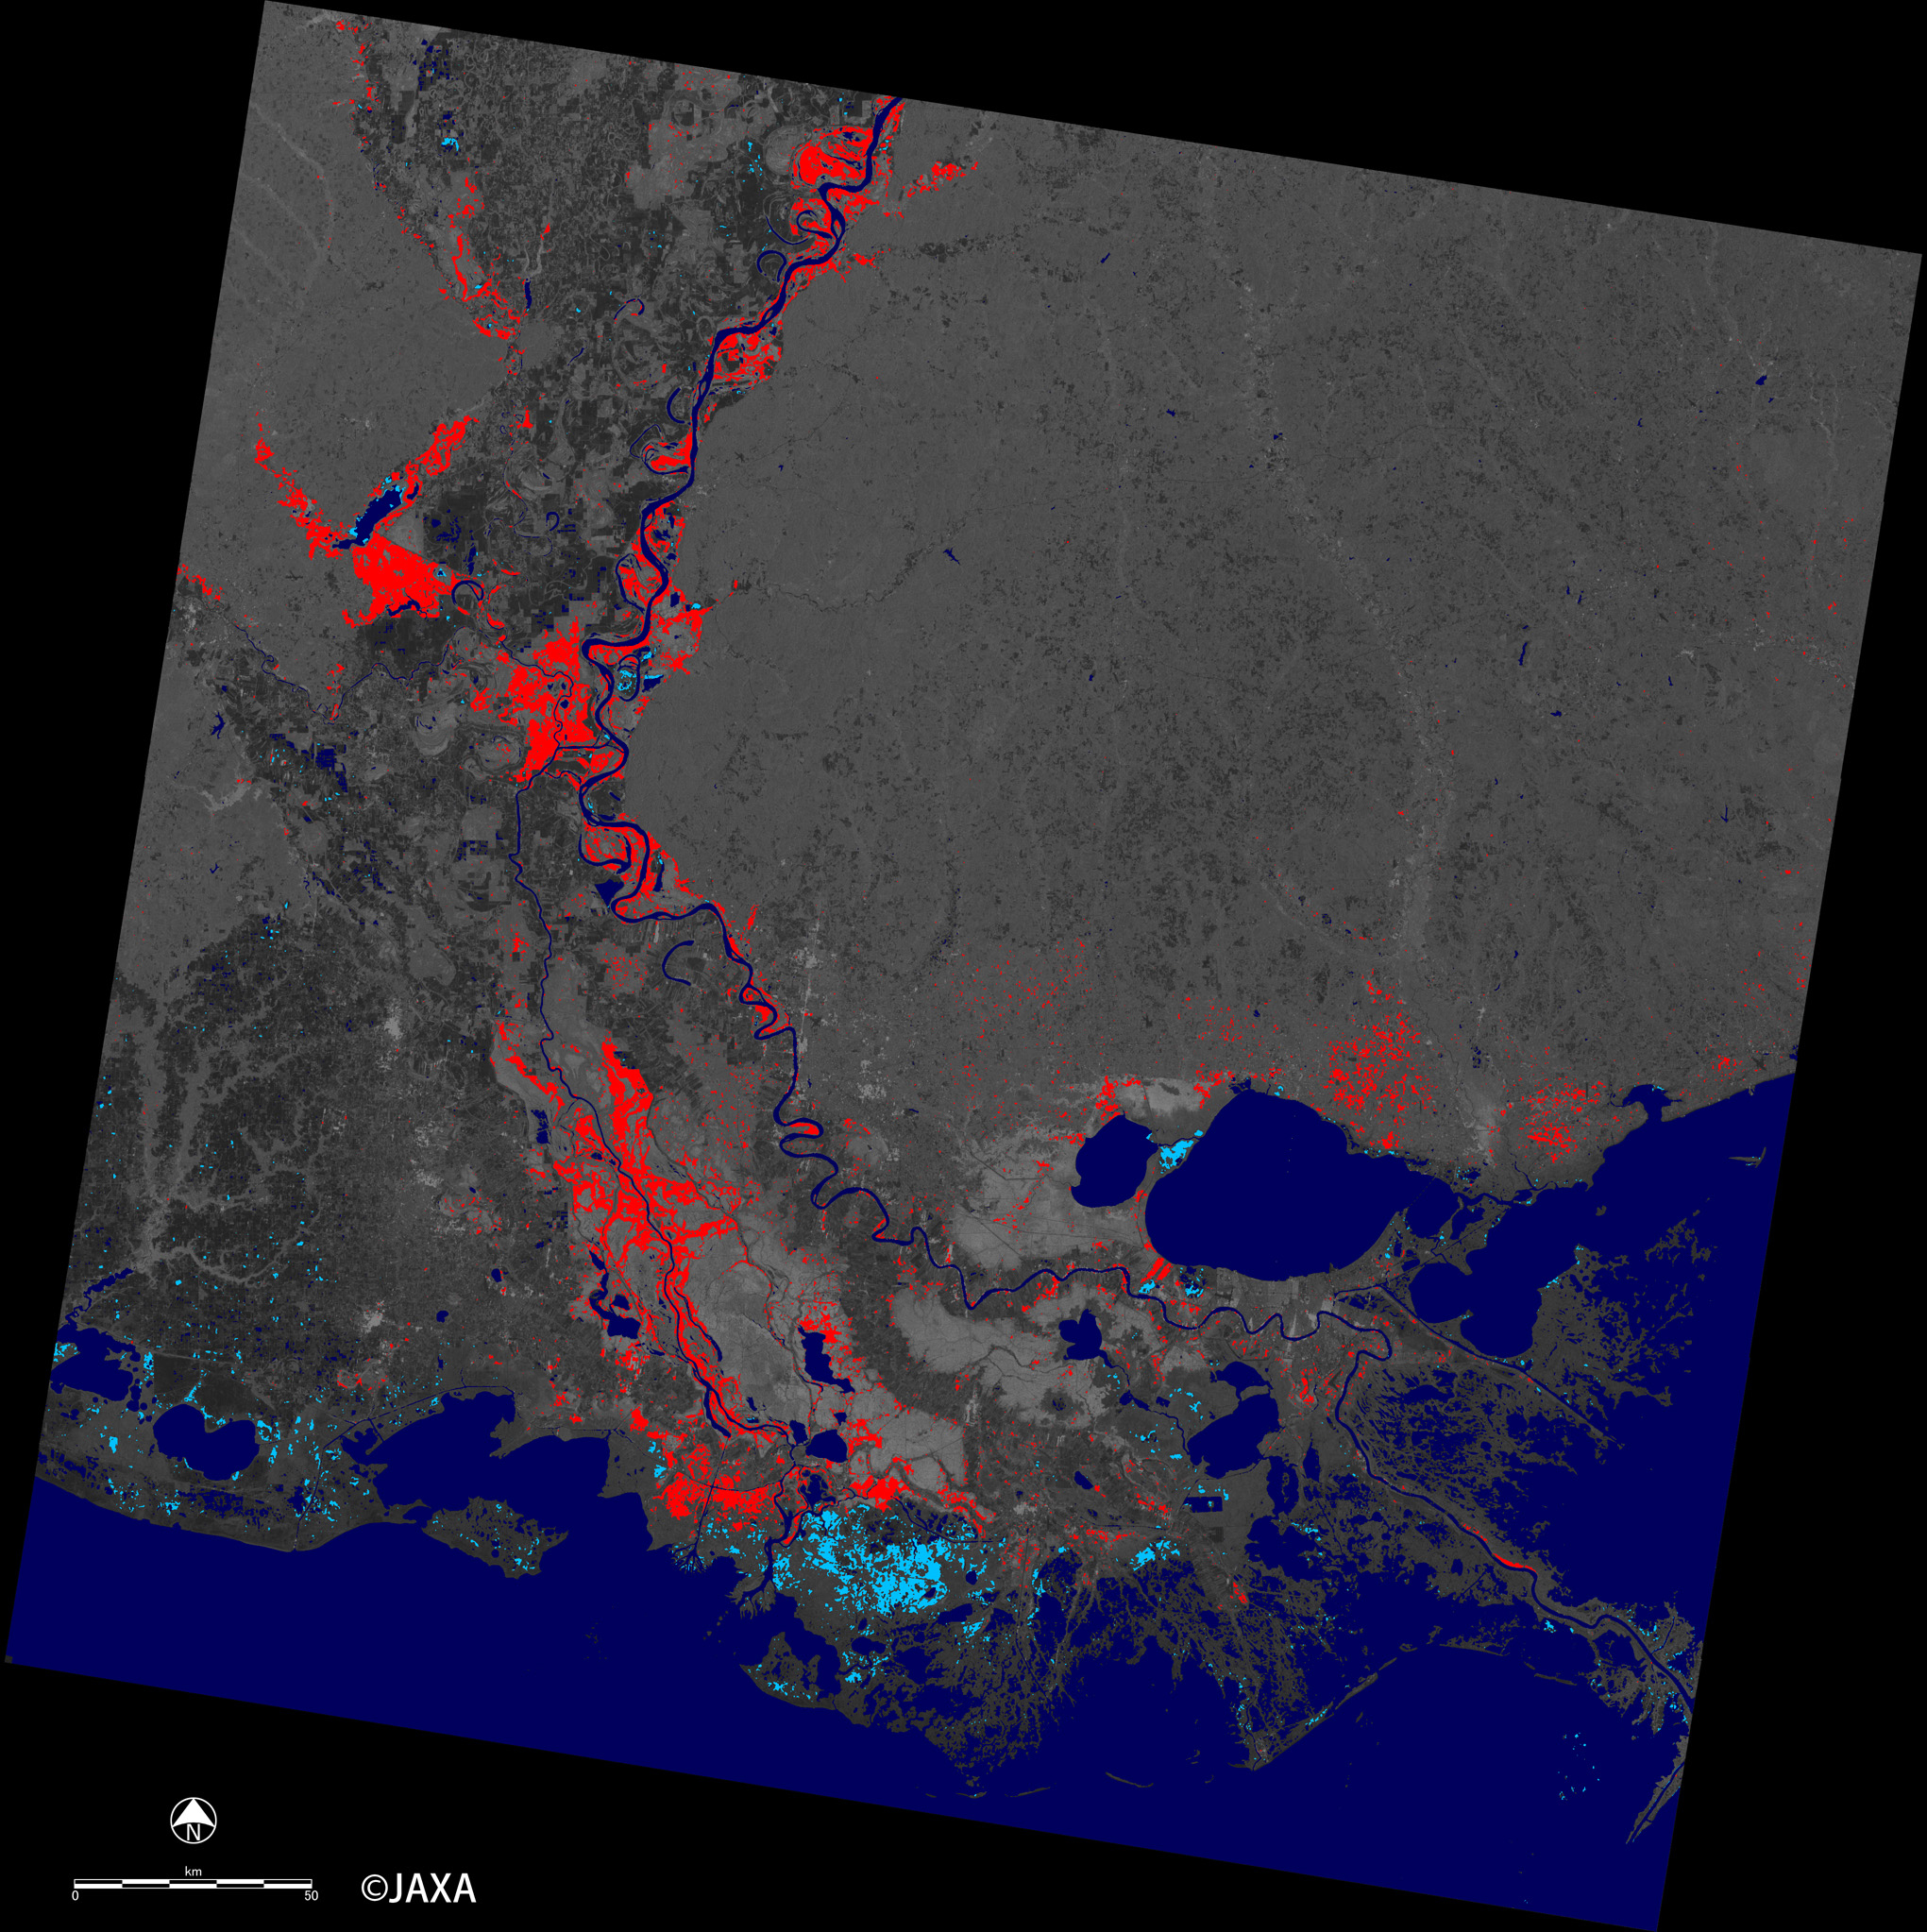 図7: 「だいち2号」搭載PALSAR-2観測画像による2016年1月16日の浸水域の推定図。赤色が森林部の浸水域、水色が水面が露出した浸水域、暗い青は平常時の水域を示す。